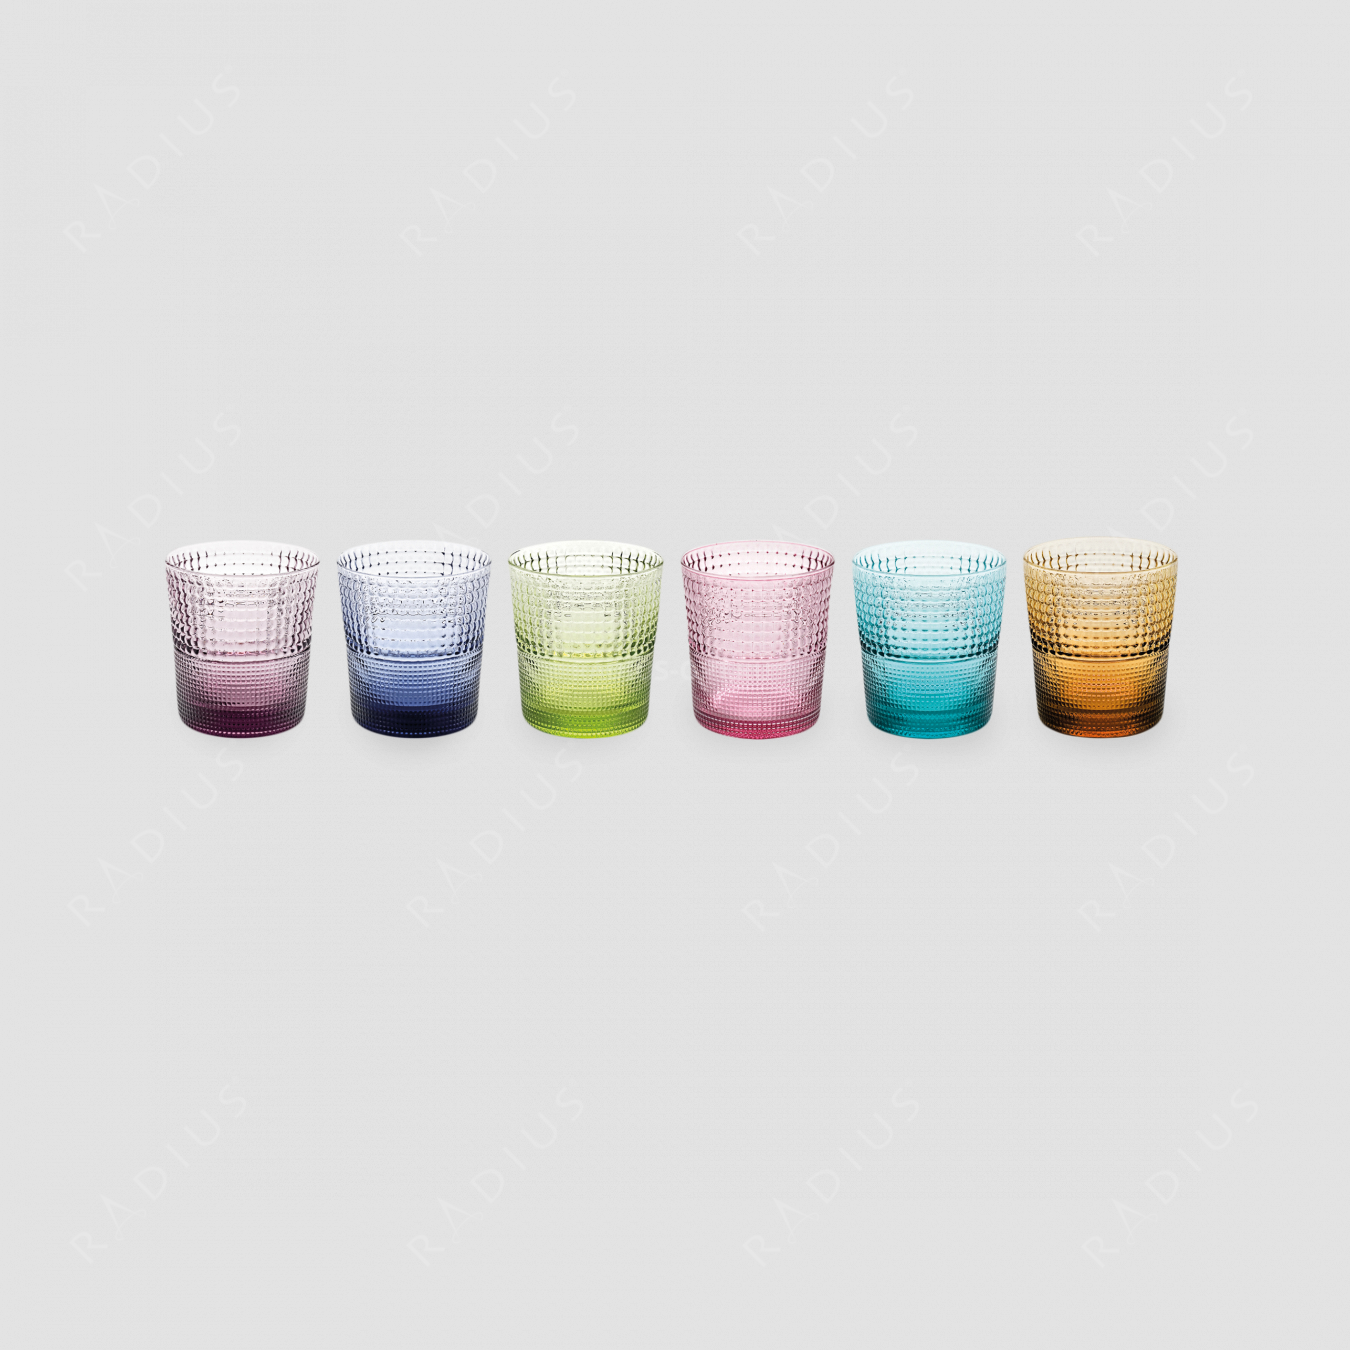 Набор из 6-ти стаканов для напитков, диаметр: 280 мл, высота: 9 см, материал: стекло, цветовое ассорти, серия Speedy, IVV (Italy), Италия